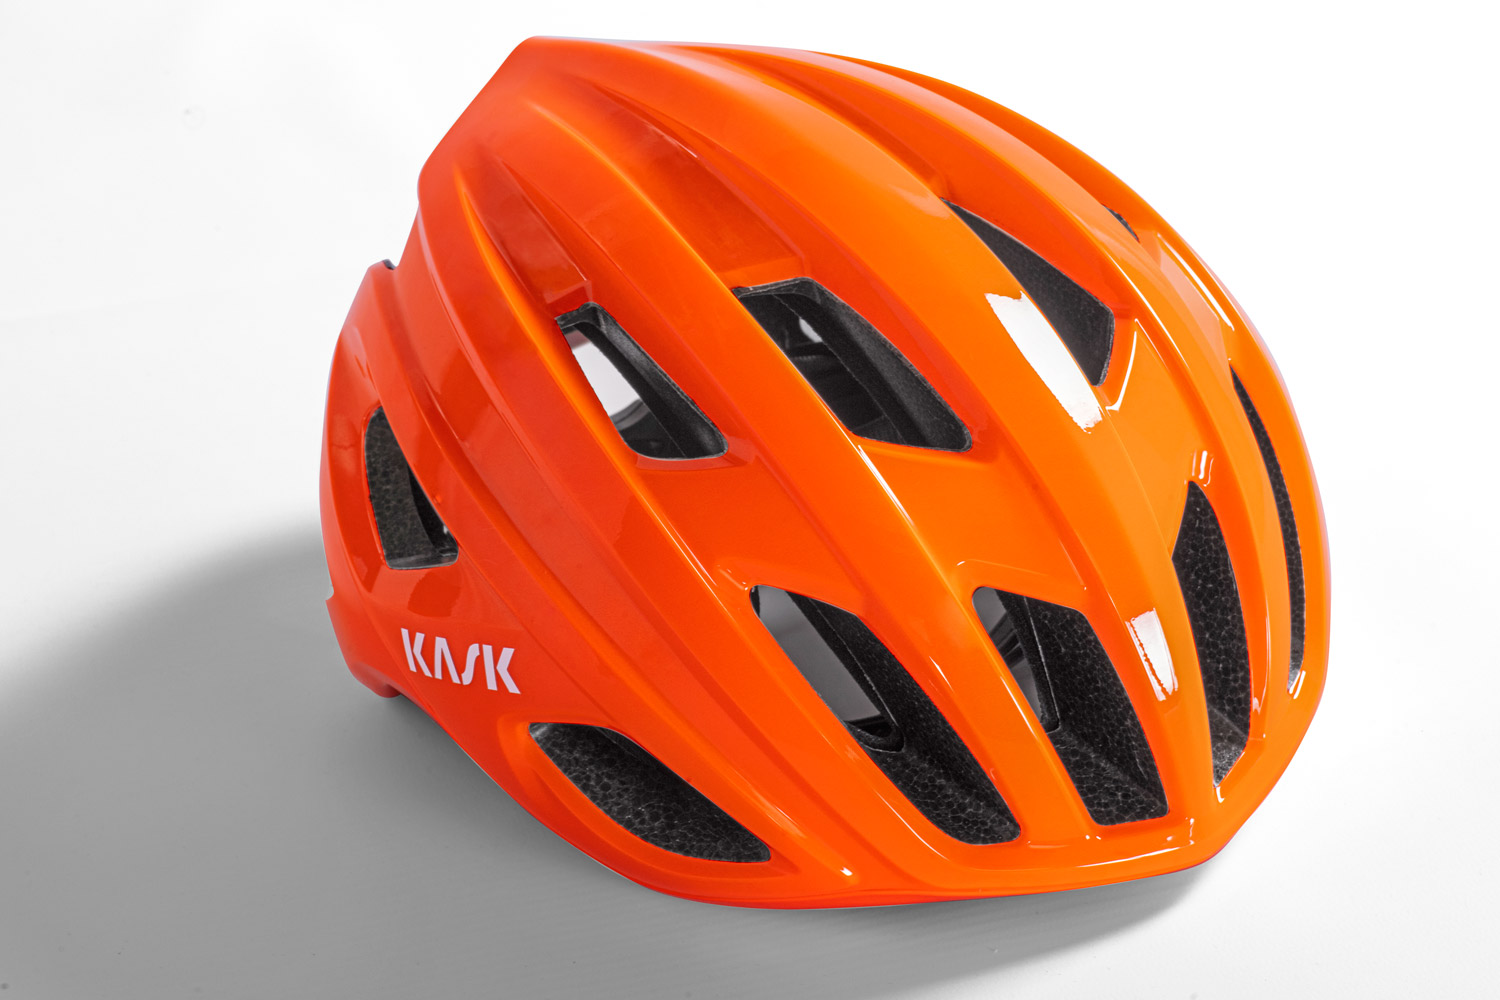 Kask-Mojito3-road-helmet_updated-redesigned-lightweight-fully-vented-semi-aero-road-bike-helmet_emotional.jpg